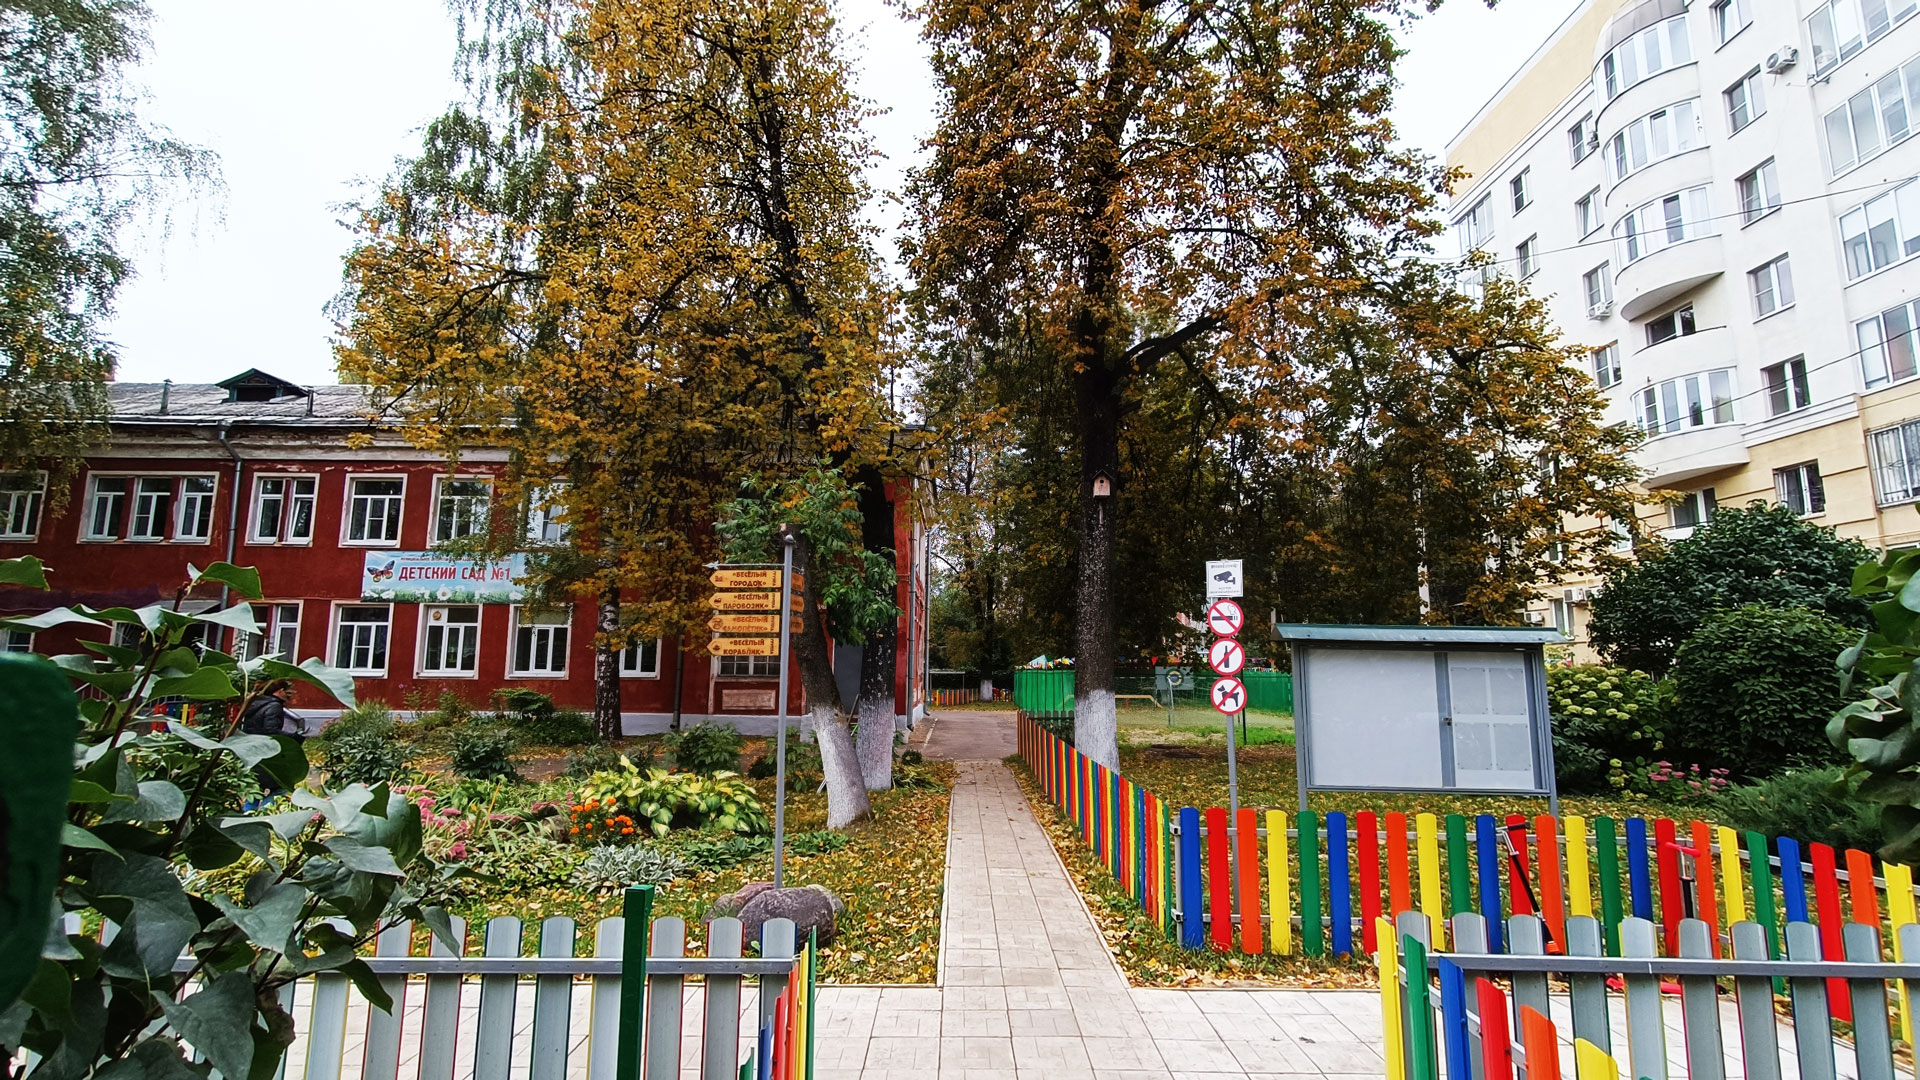 Детский сад 1 Ярославль: общий вид территории и здания.